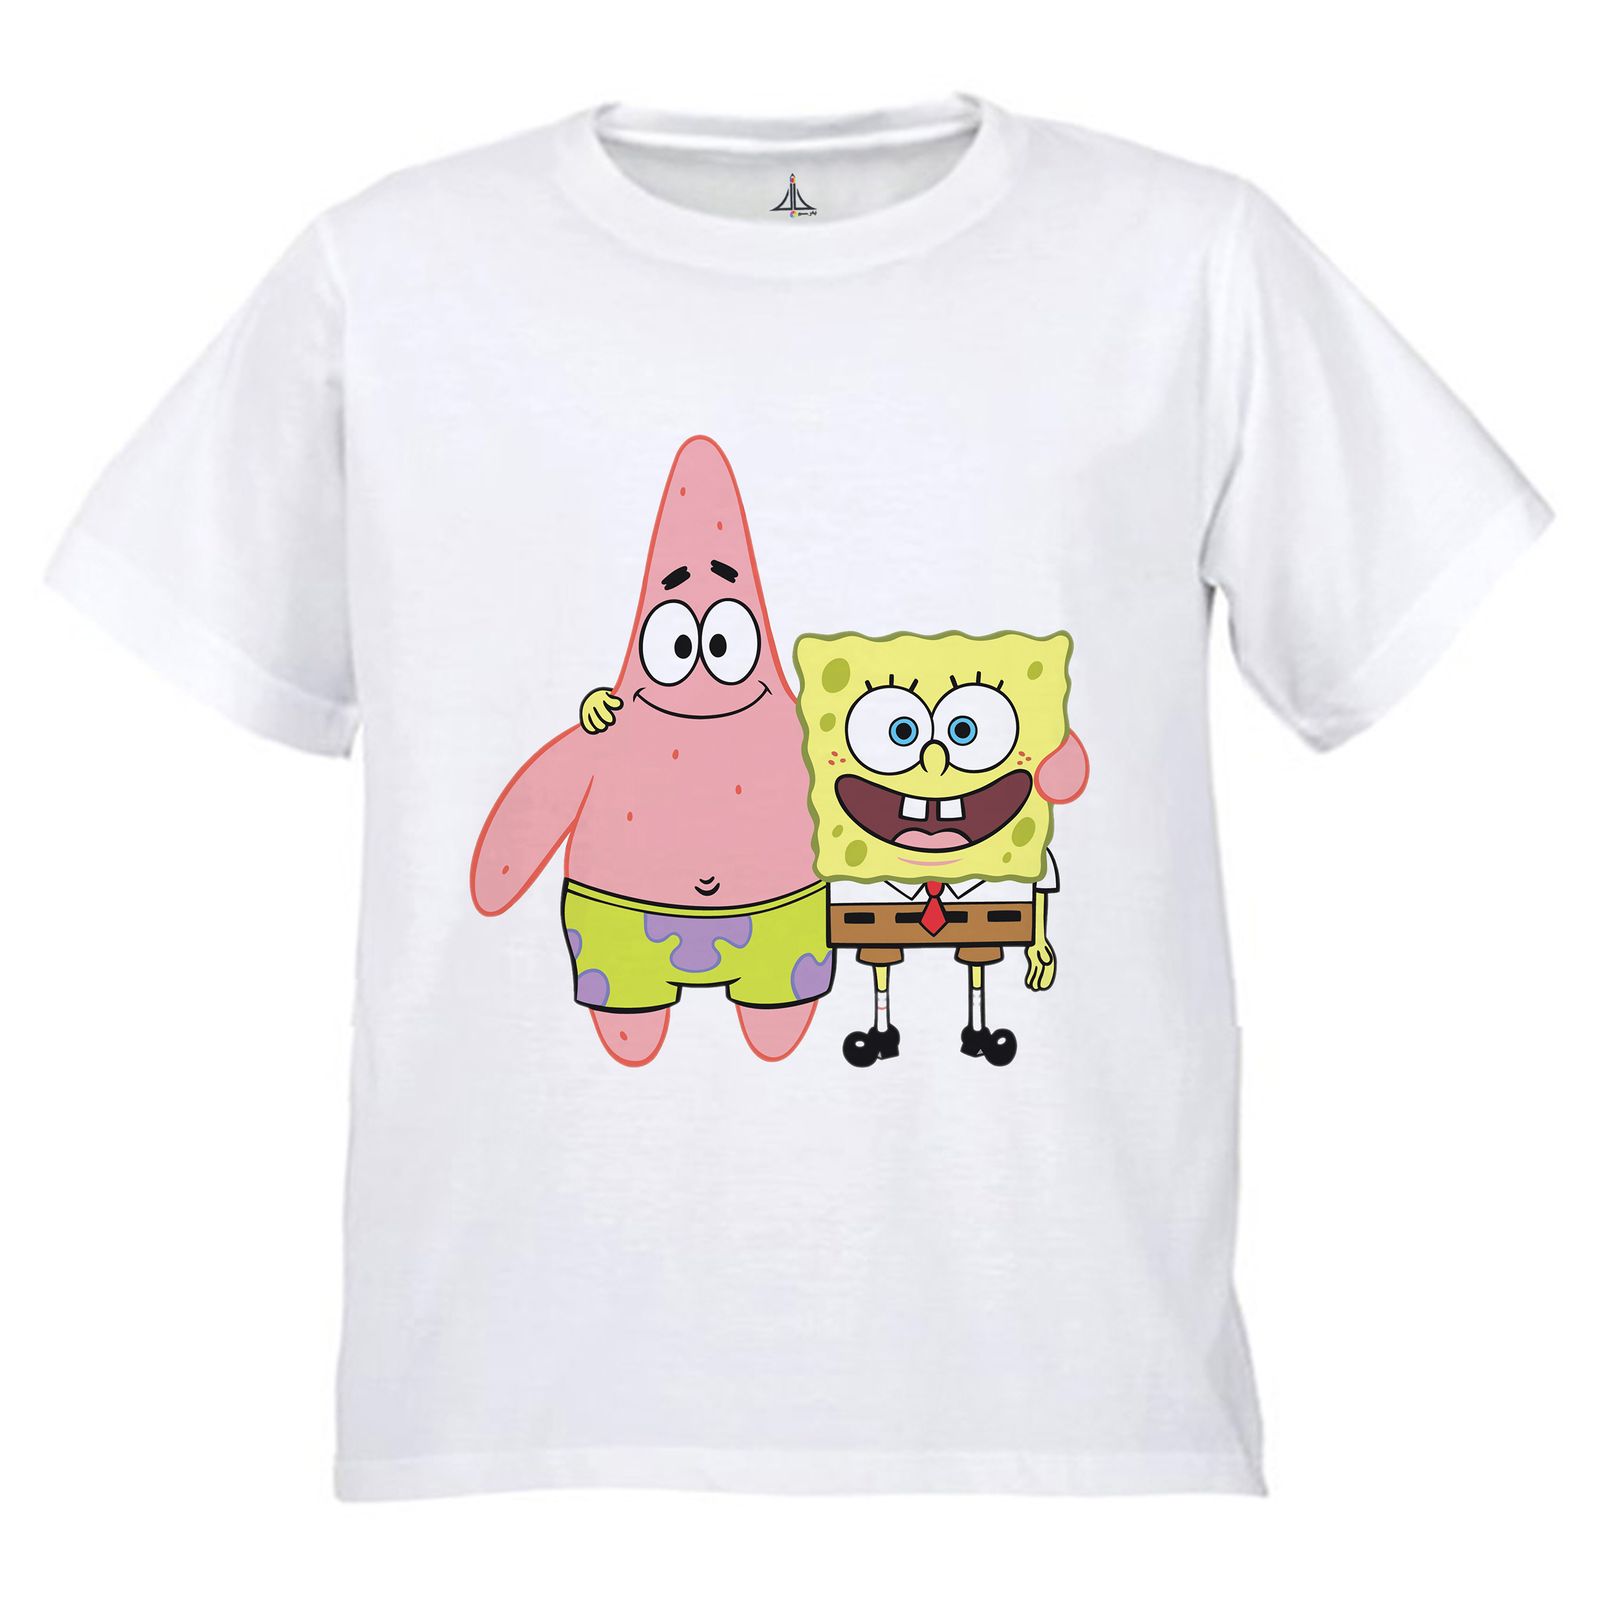 تی شرت دخترانه به رسم طرح باب و پاتریک کد 9906